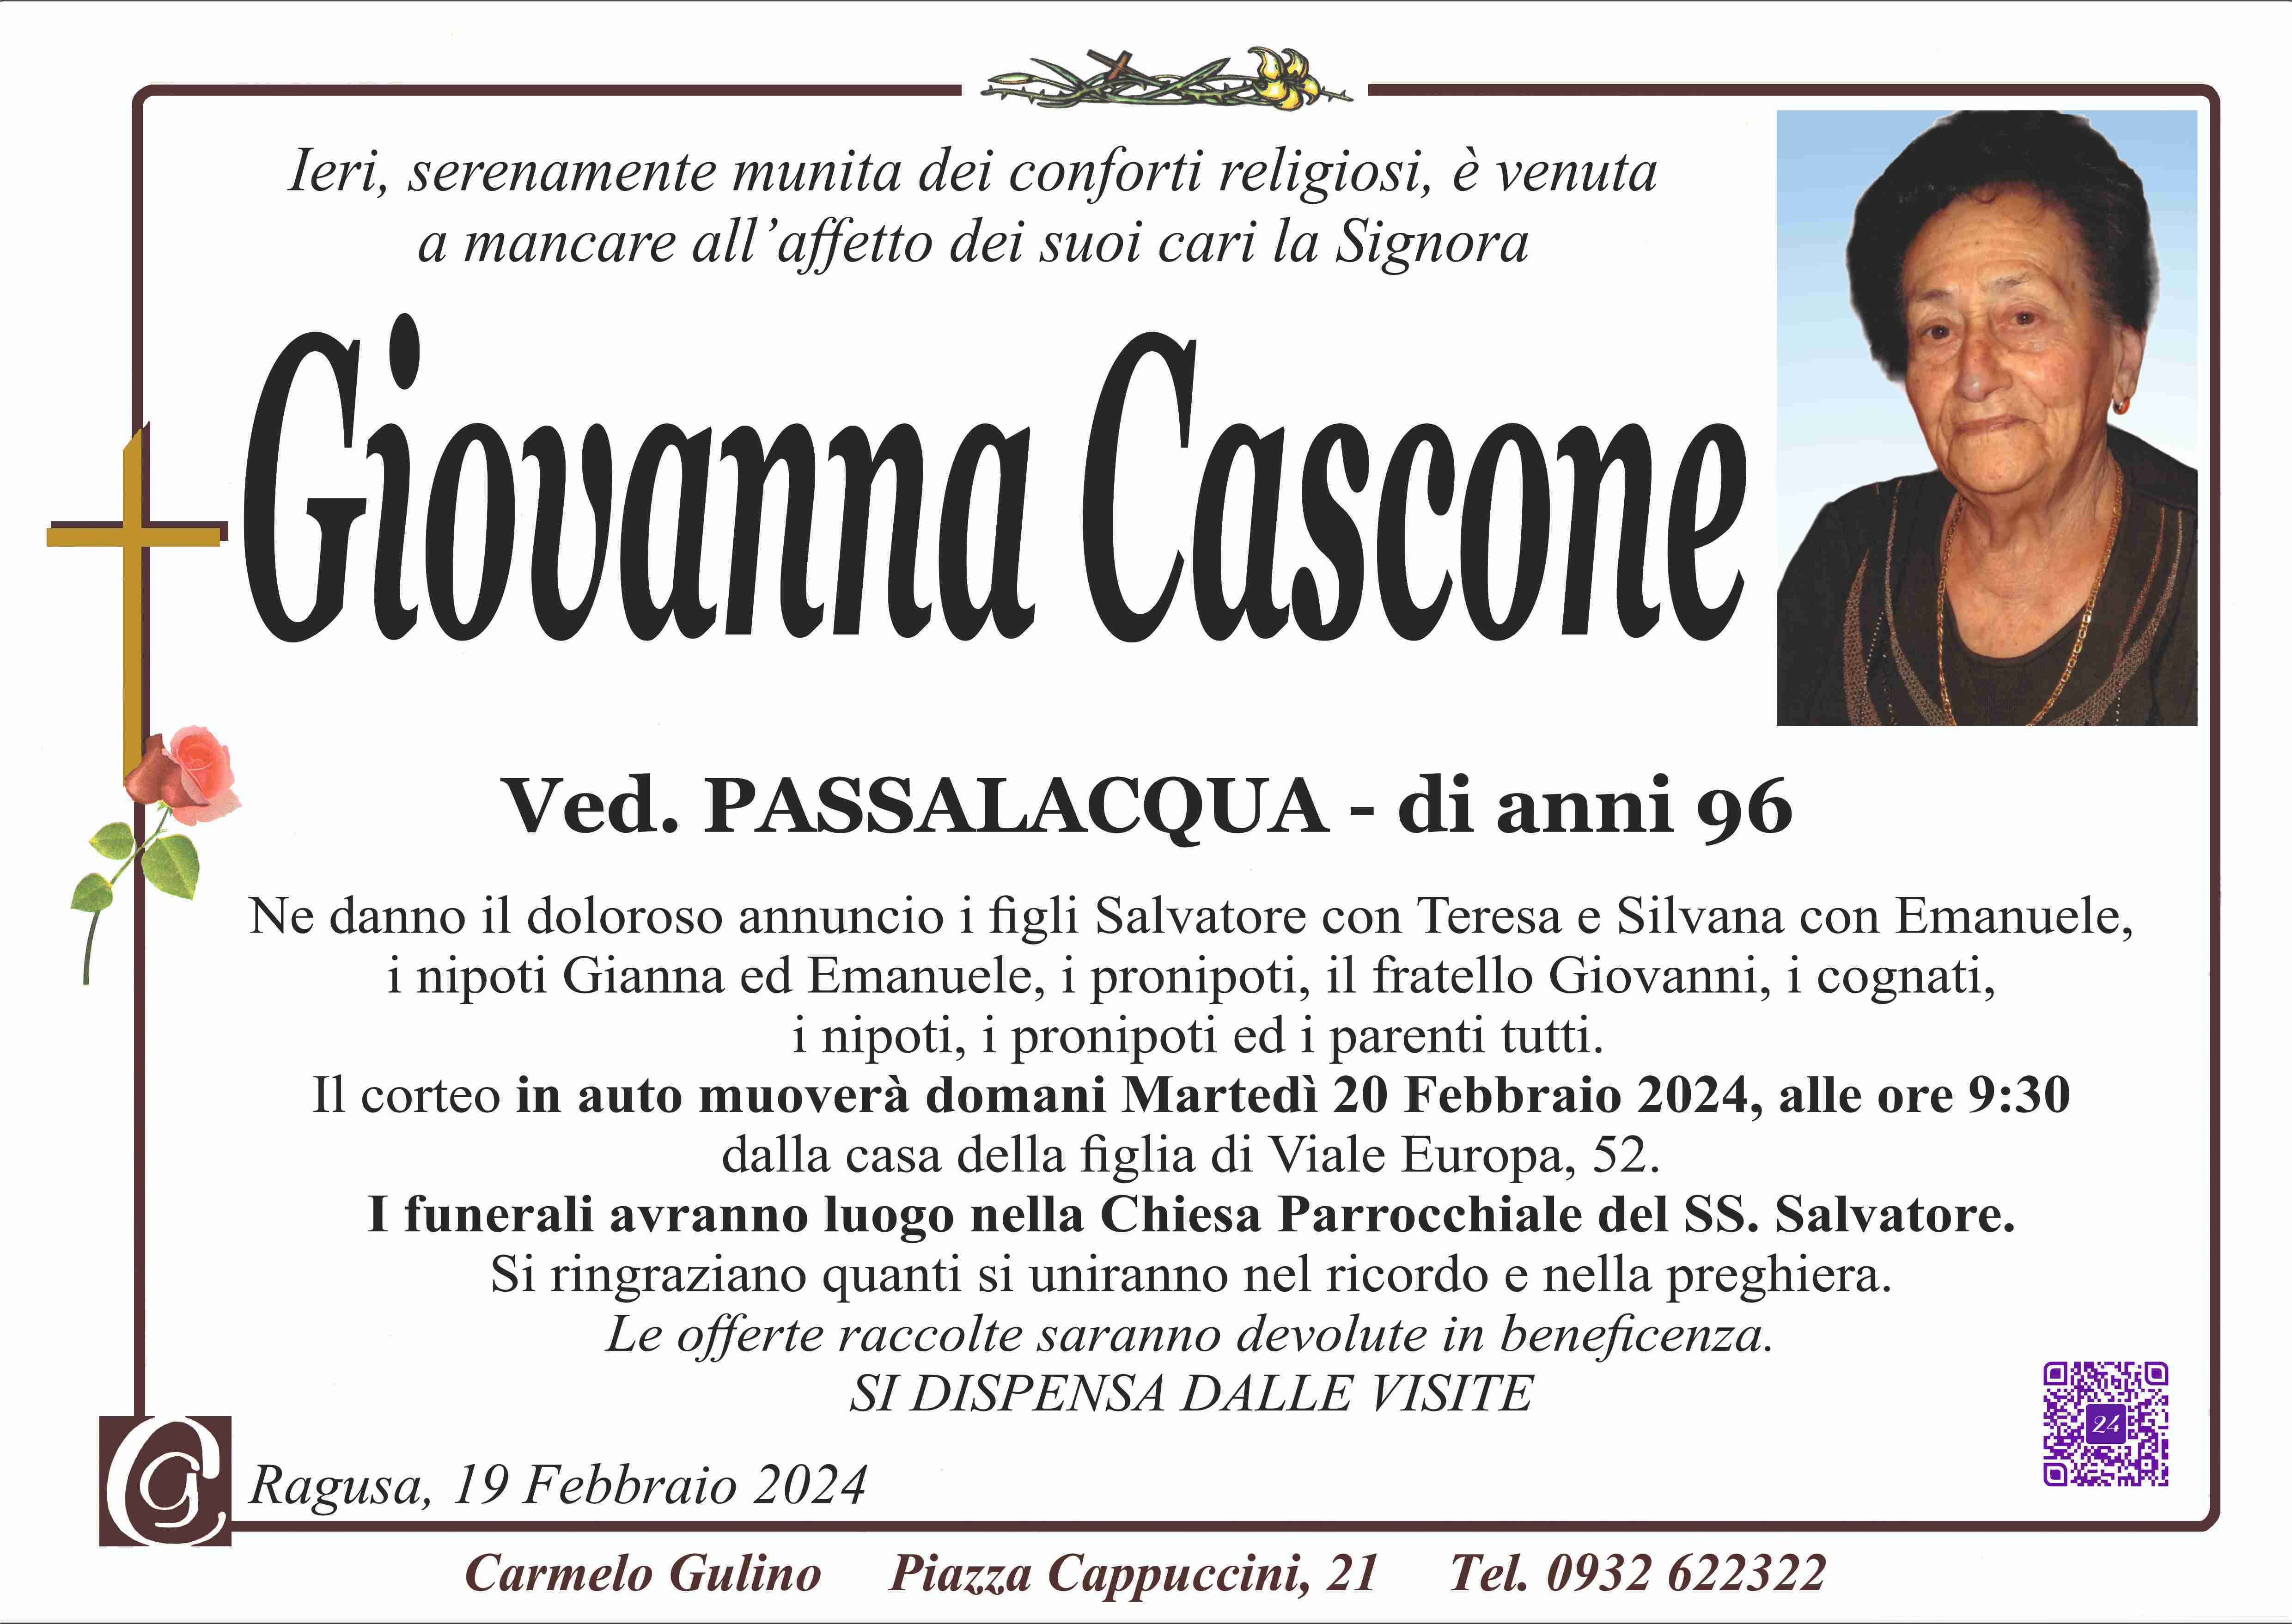 Giovanna Cascone